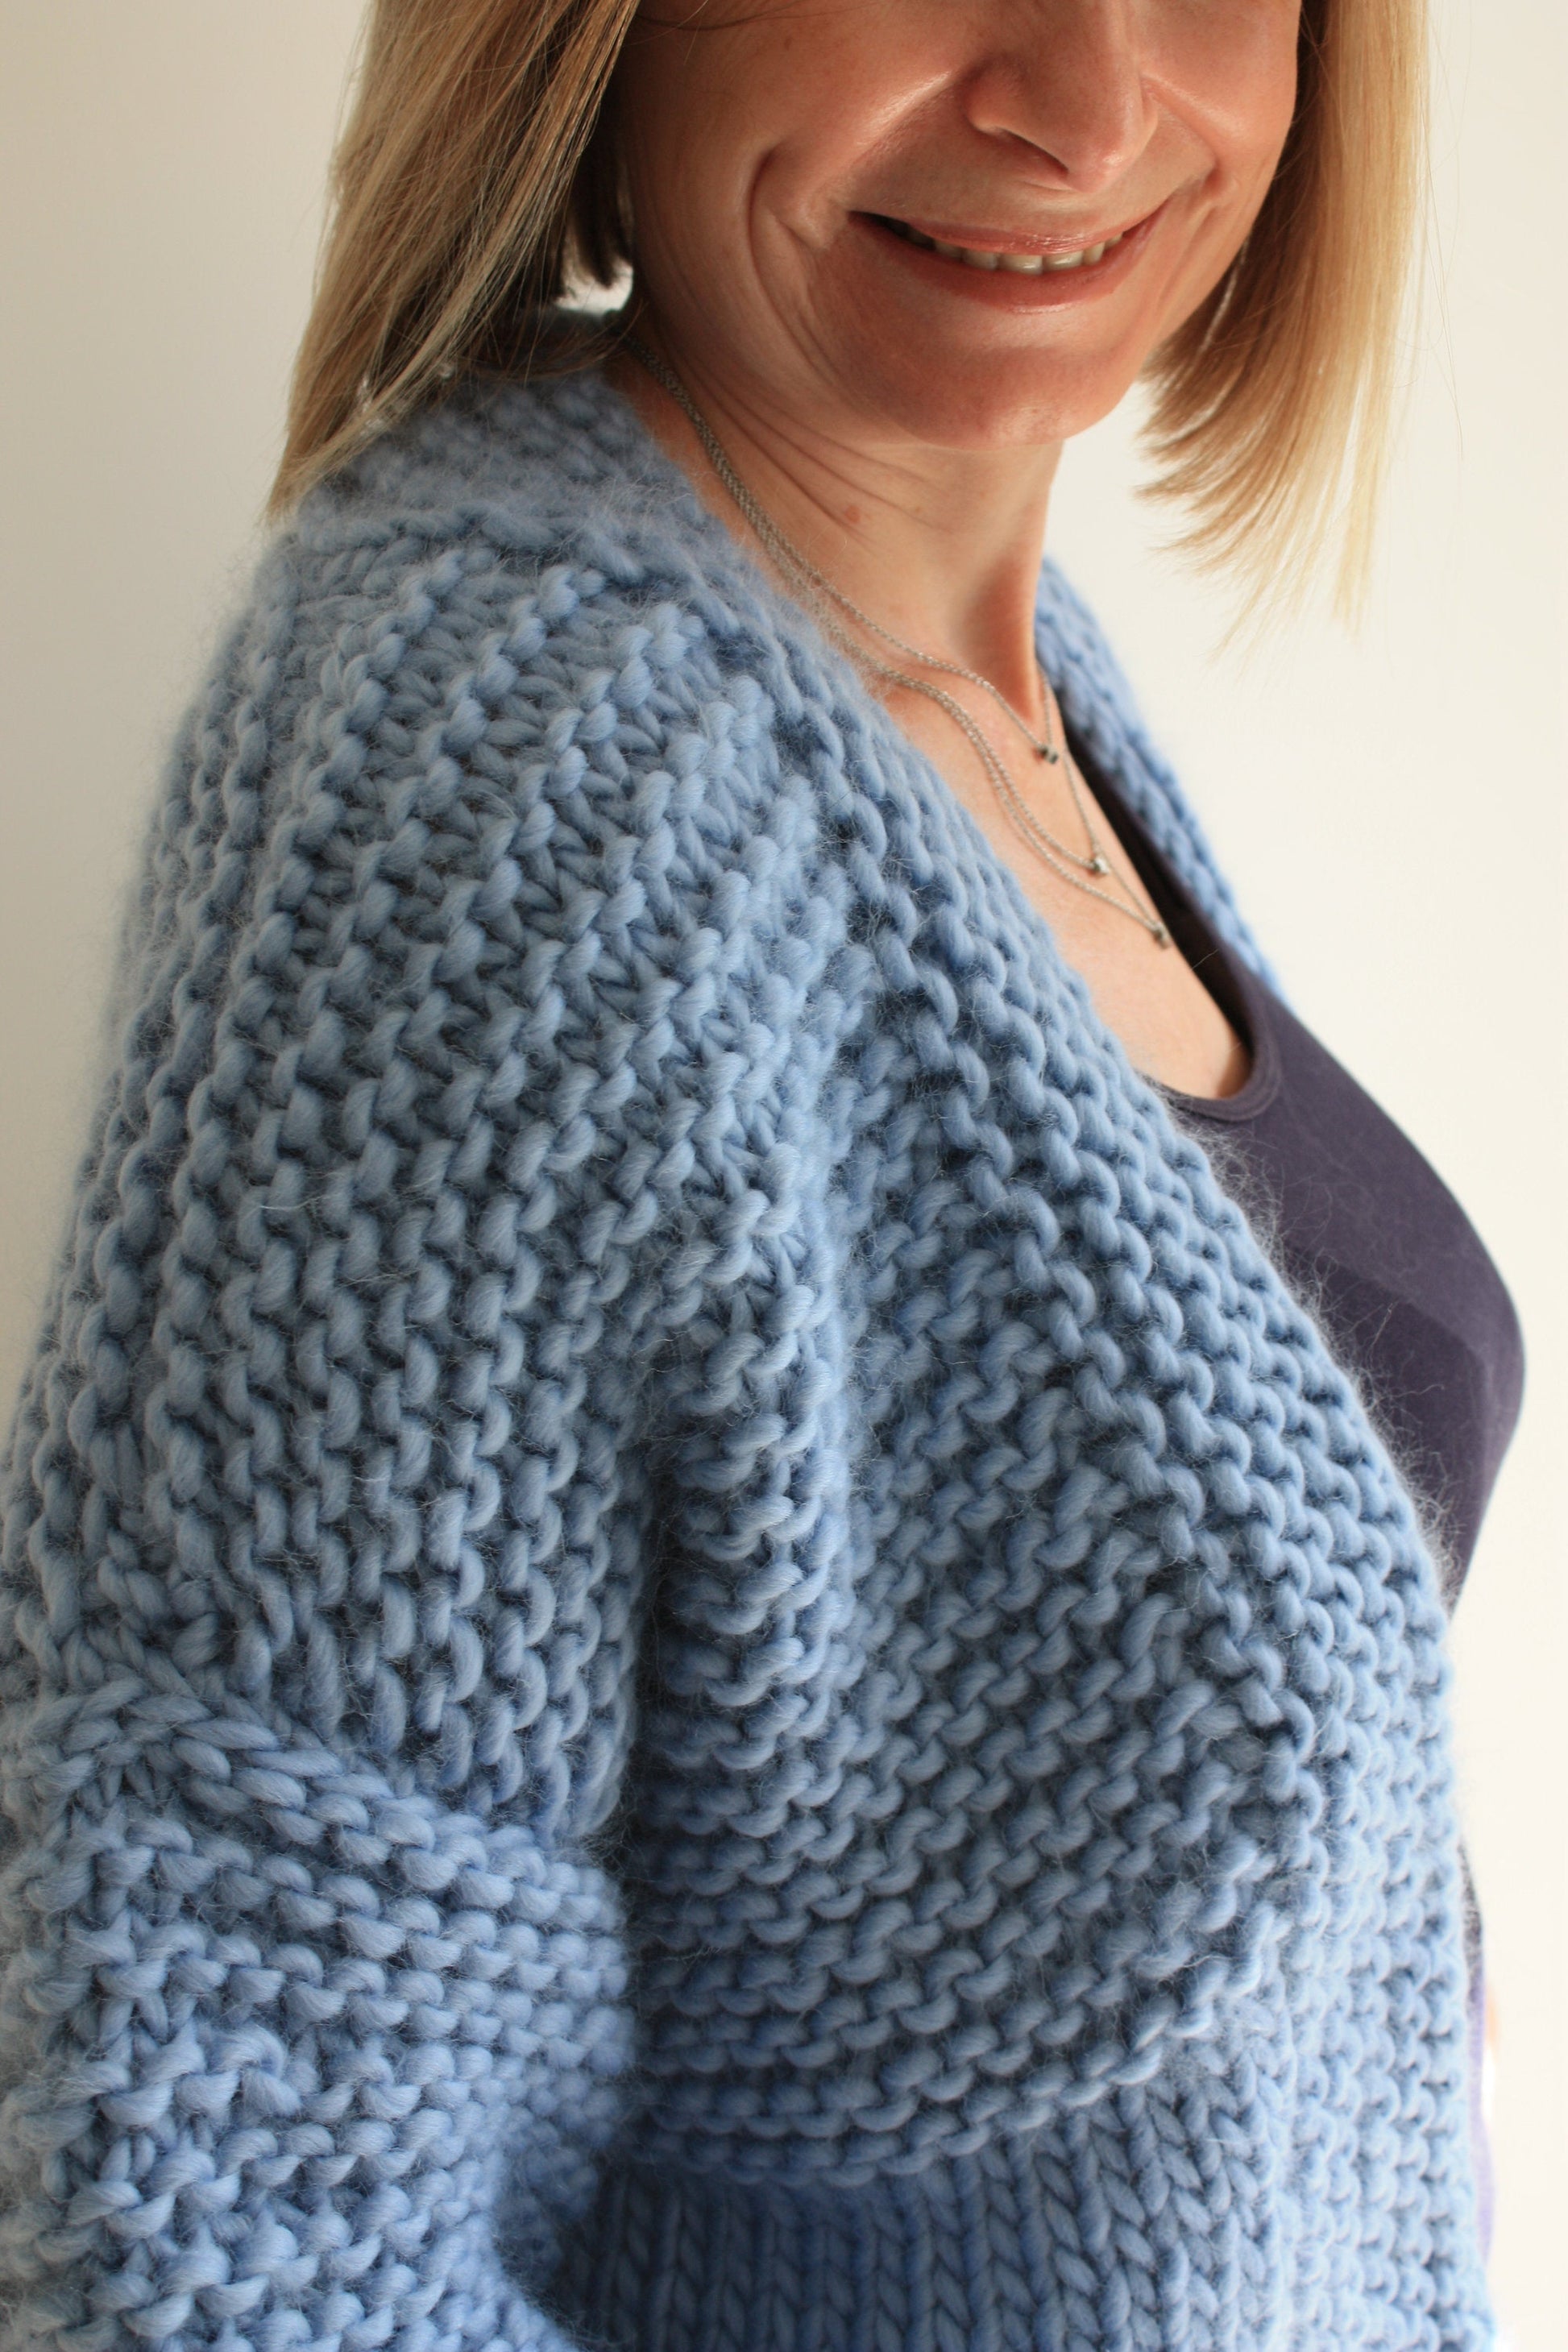 Chunky Knitting Pattern Six Stitch Sweater -  Canada